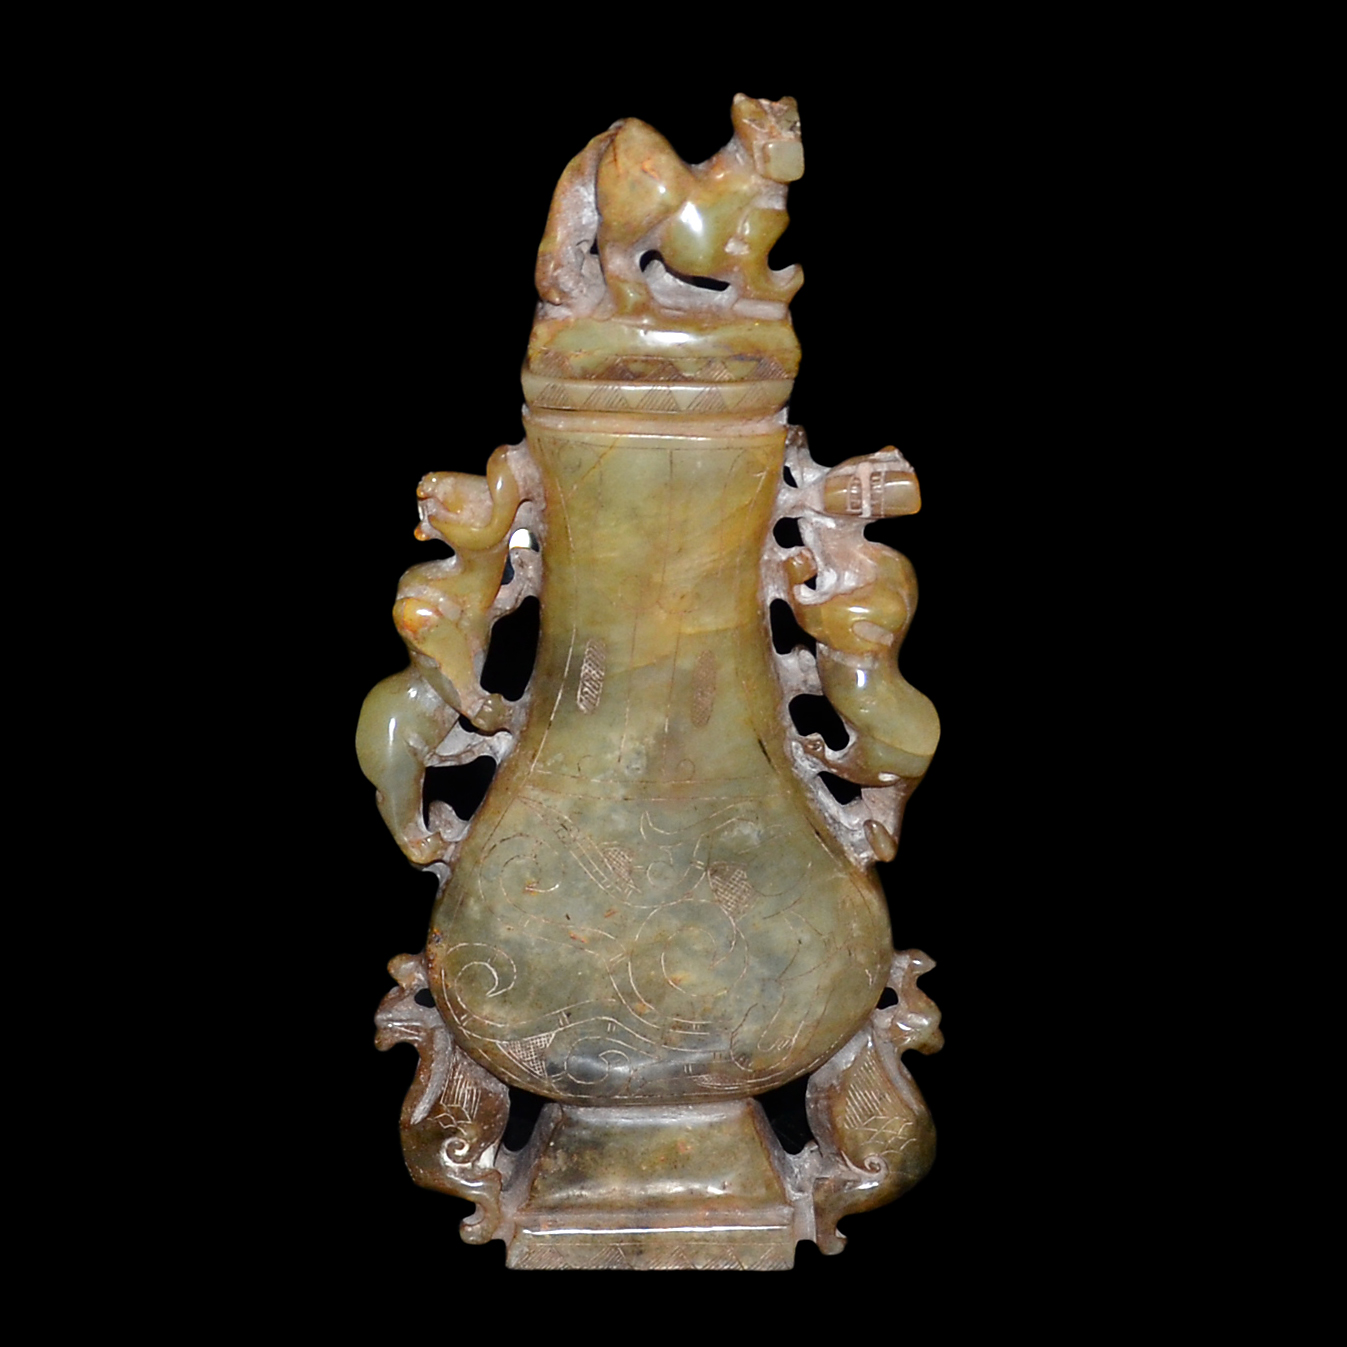 黃玉雕獸耳帶蓋扁瓶 A Yellow Jade Carving of Flask with Beast Handles and Cover Height: 9⅝ in (24.4 cm)